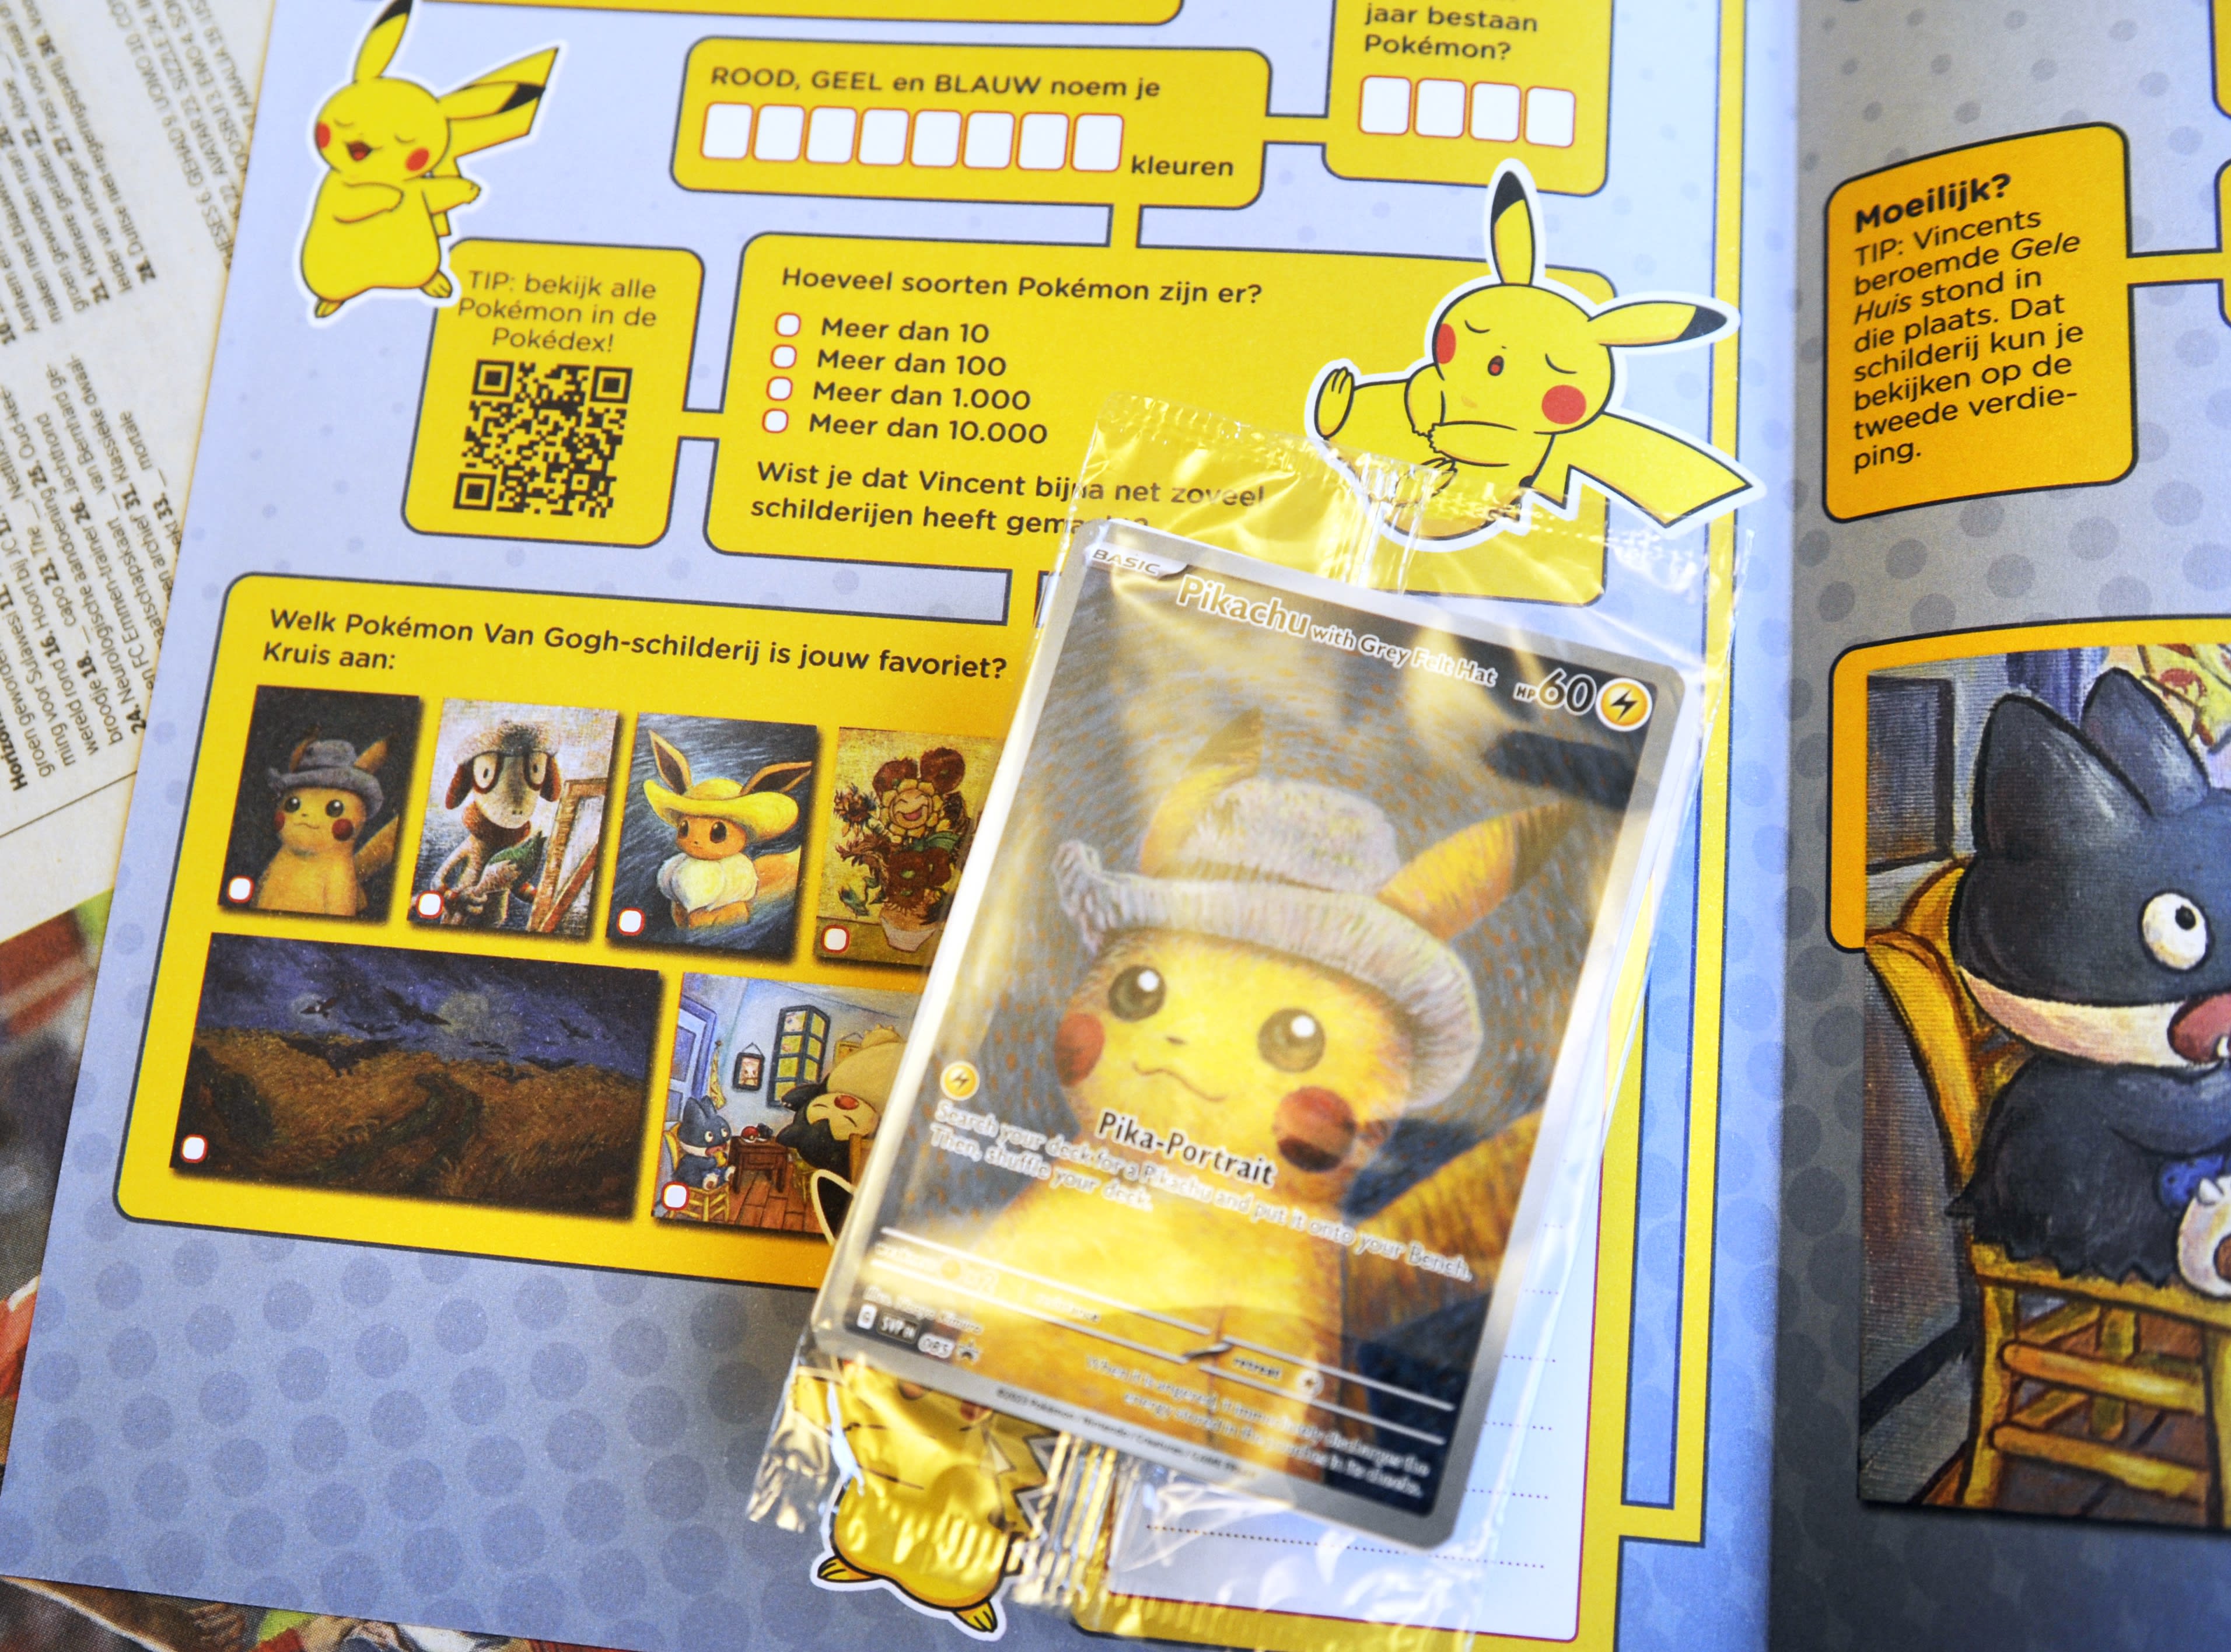 Van Gogh museum stuurt vier medewerkers weg om wangedrag met Pokémonkaarten